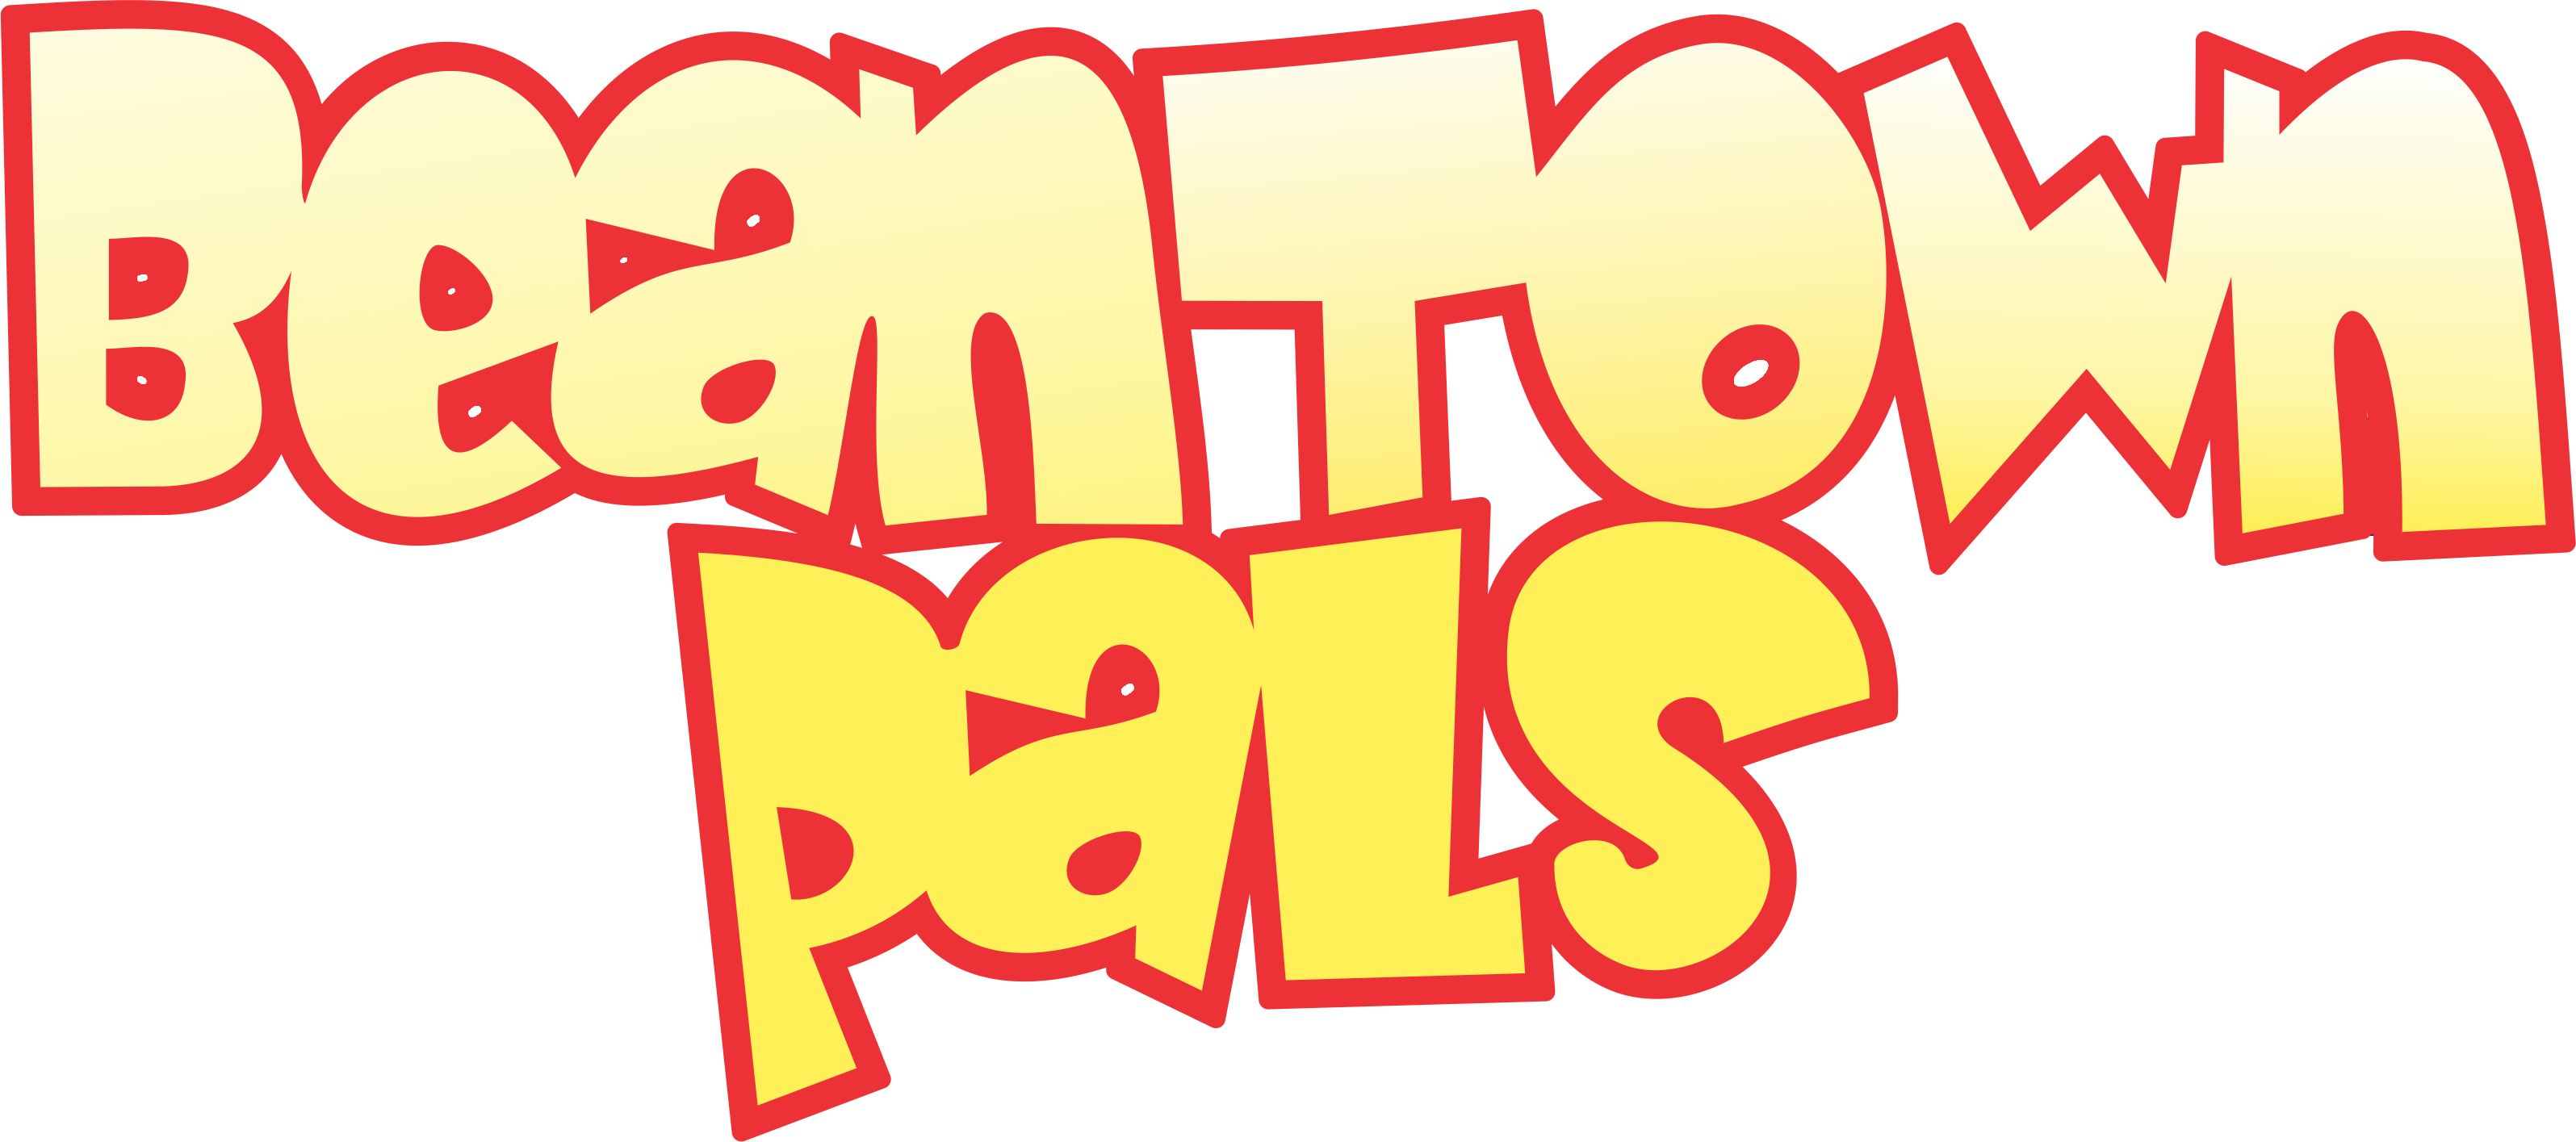 Beantown Pals Logo